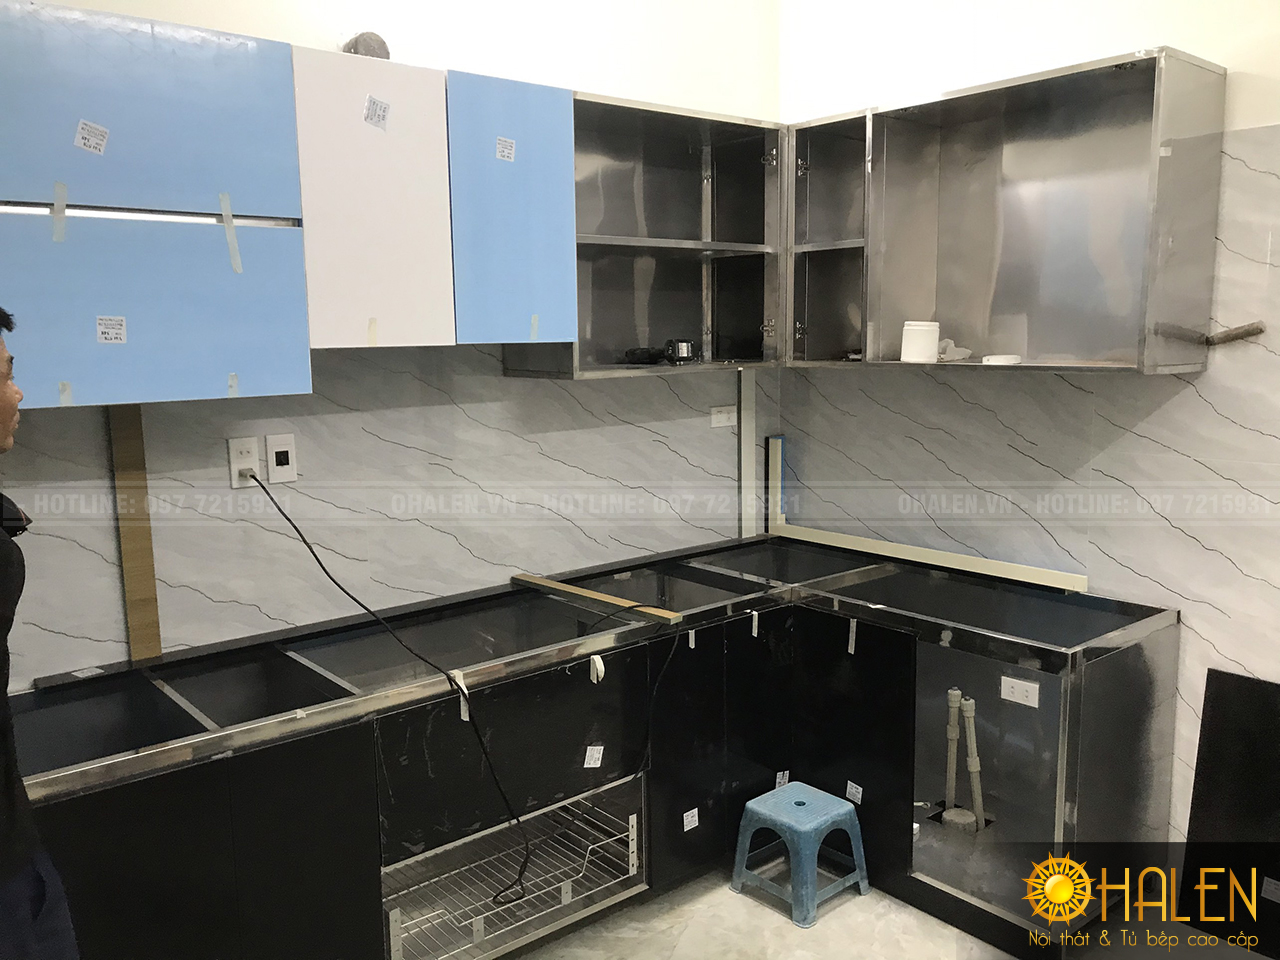 Nội thất OHALEN chuyên thiết kế và thi công tủ bếp uy tín - chất lượng tại Hà Nội